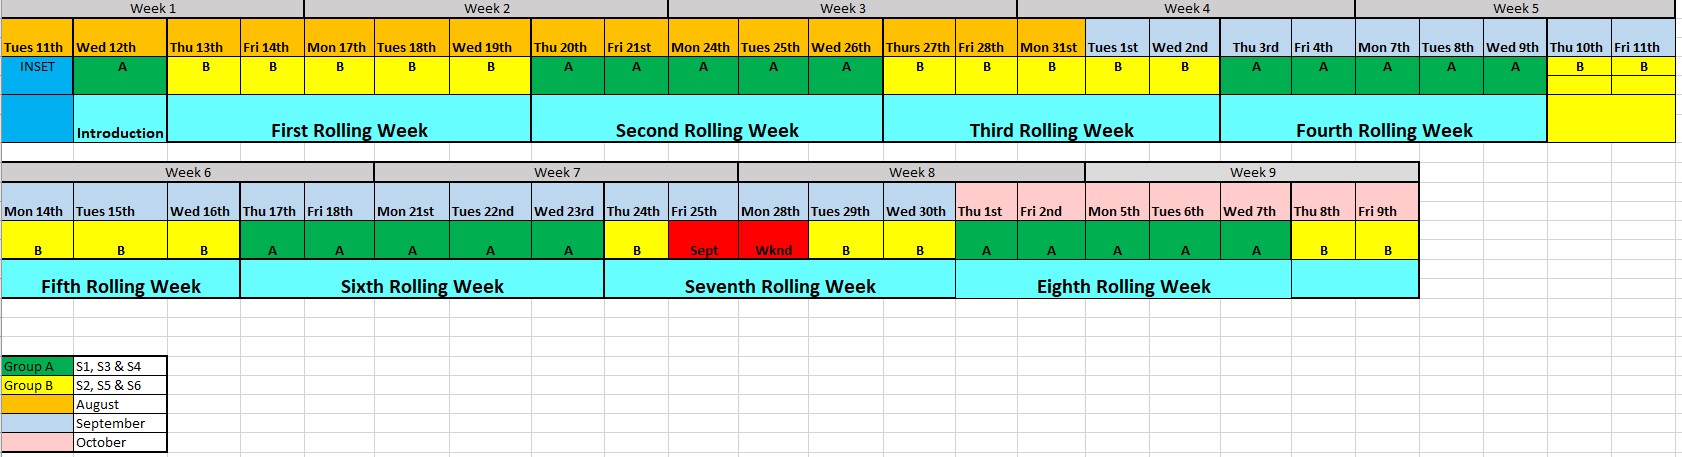 Rolling week timetable